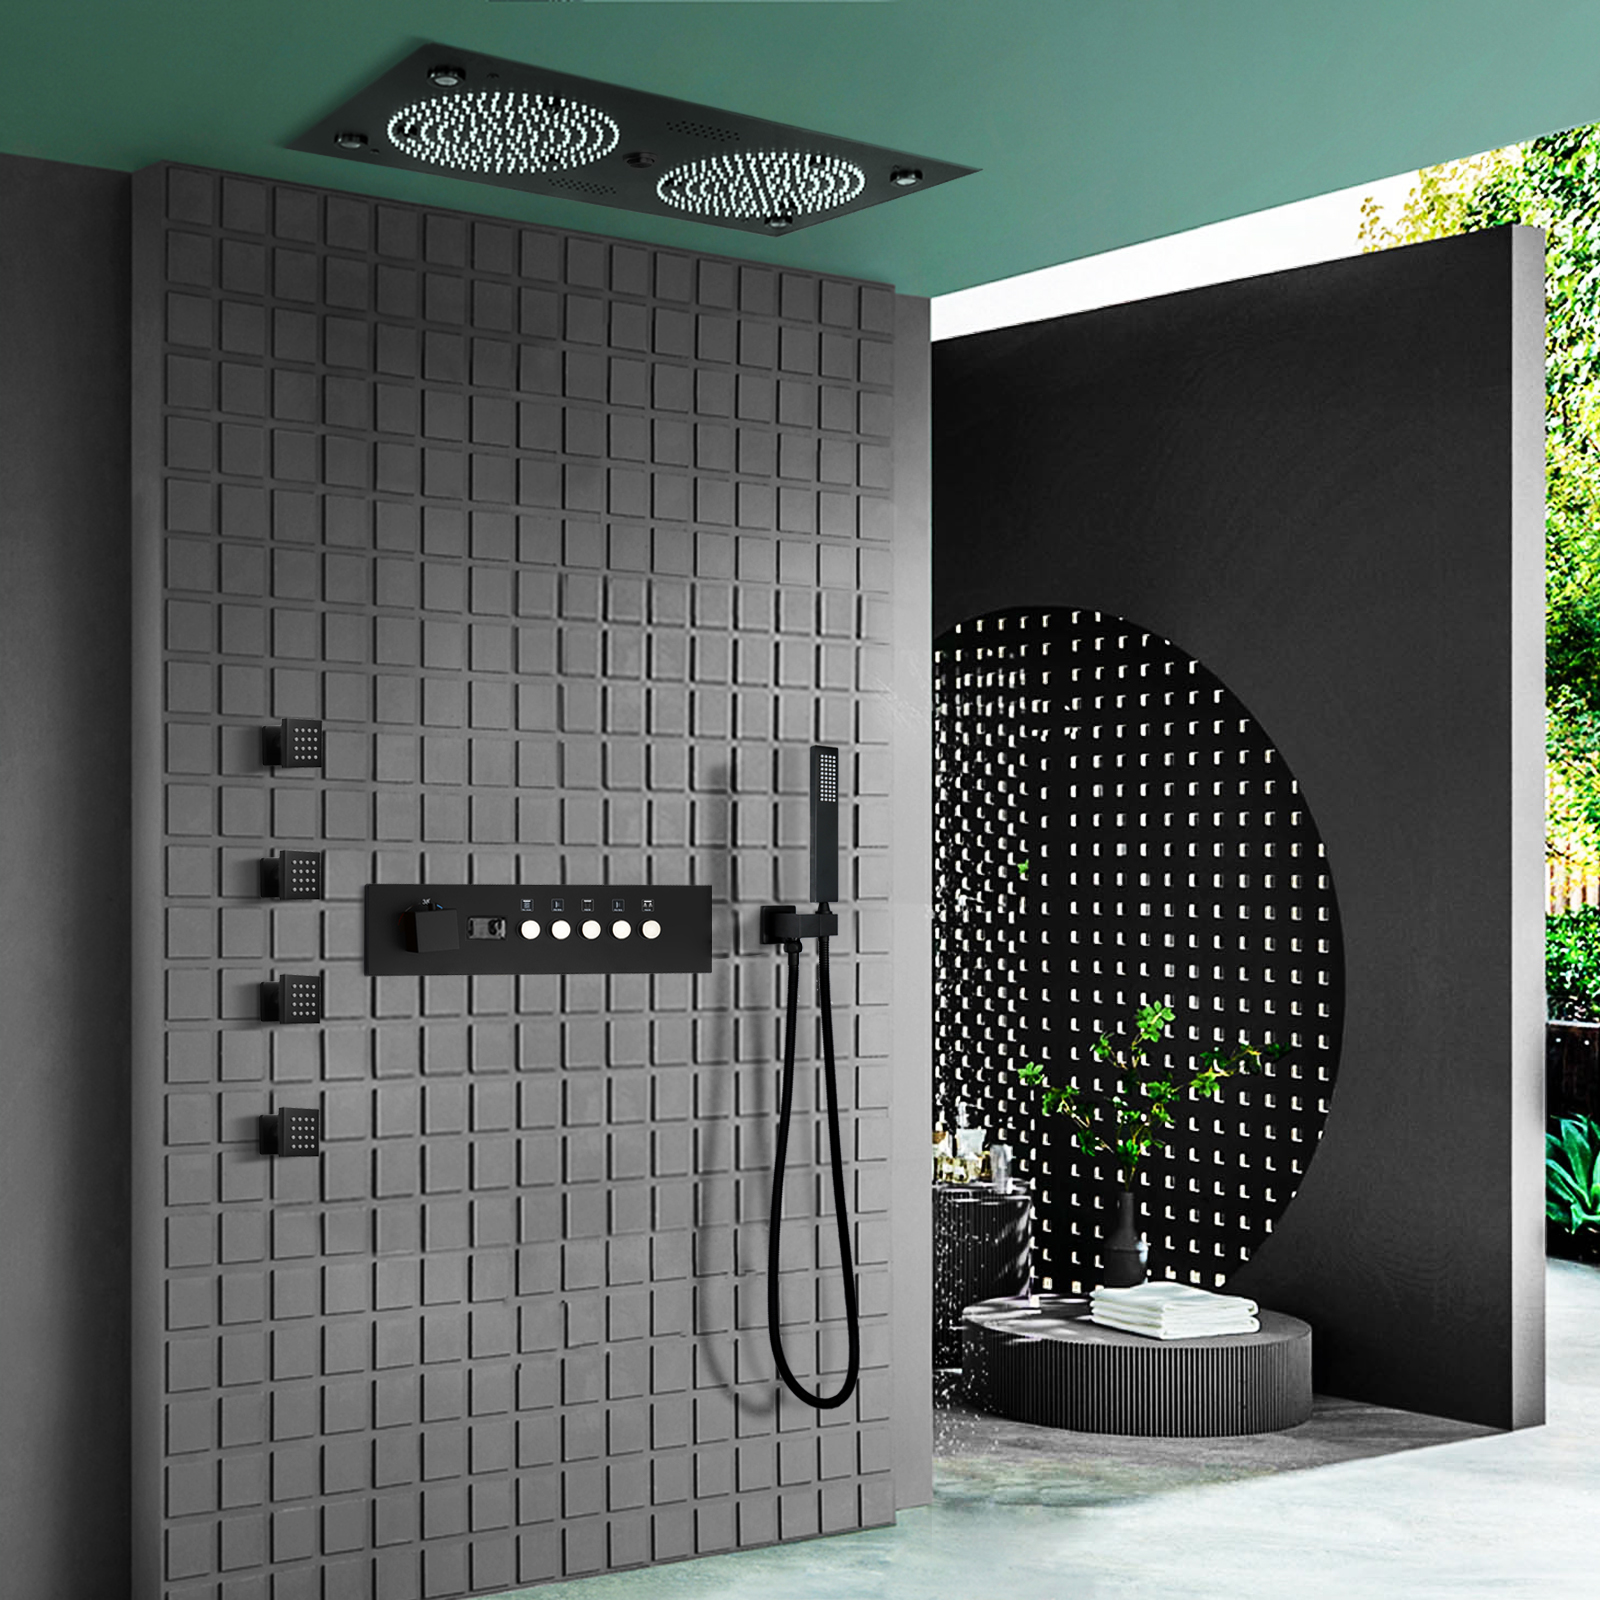 مجموعة نظام الدش الأسود اللامع مقاس 24.5 × 12.5 بوصة للحمام LED رأس دش مياه الأمطار من النحاس وبخاخ صنبور الماء الدافئ الفاخر